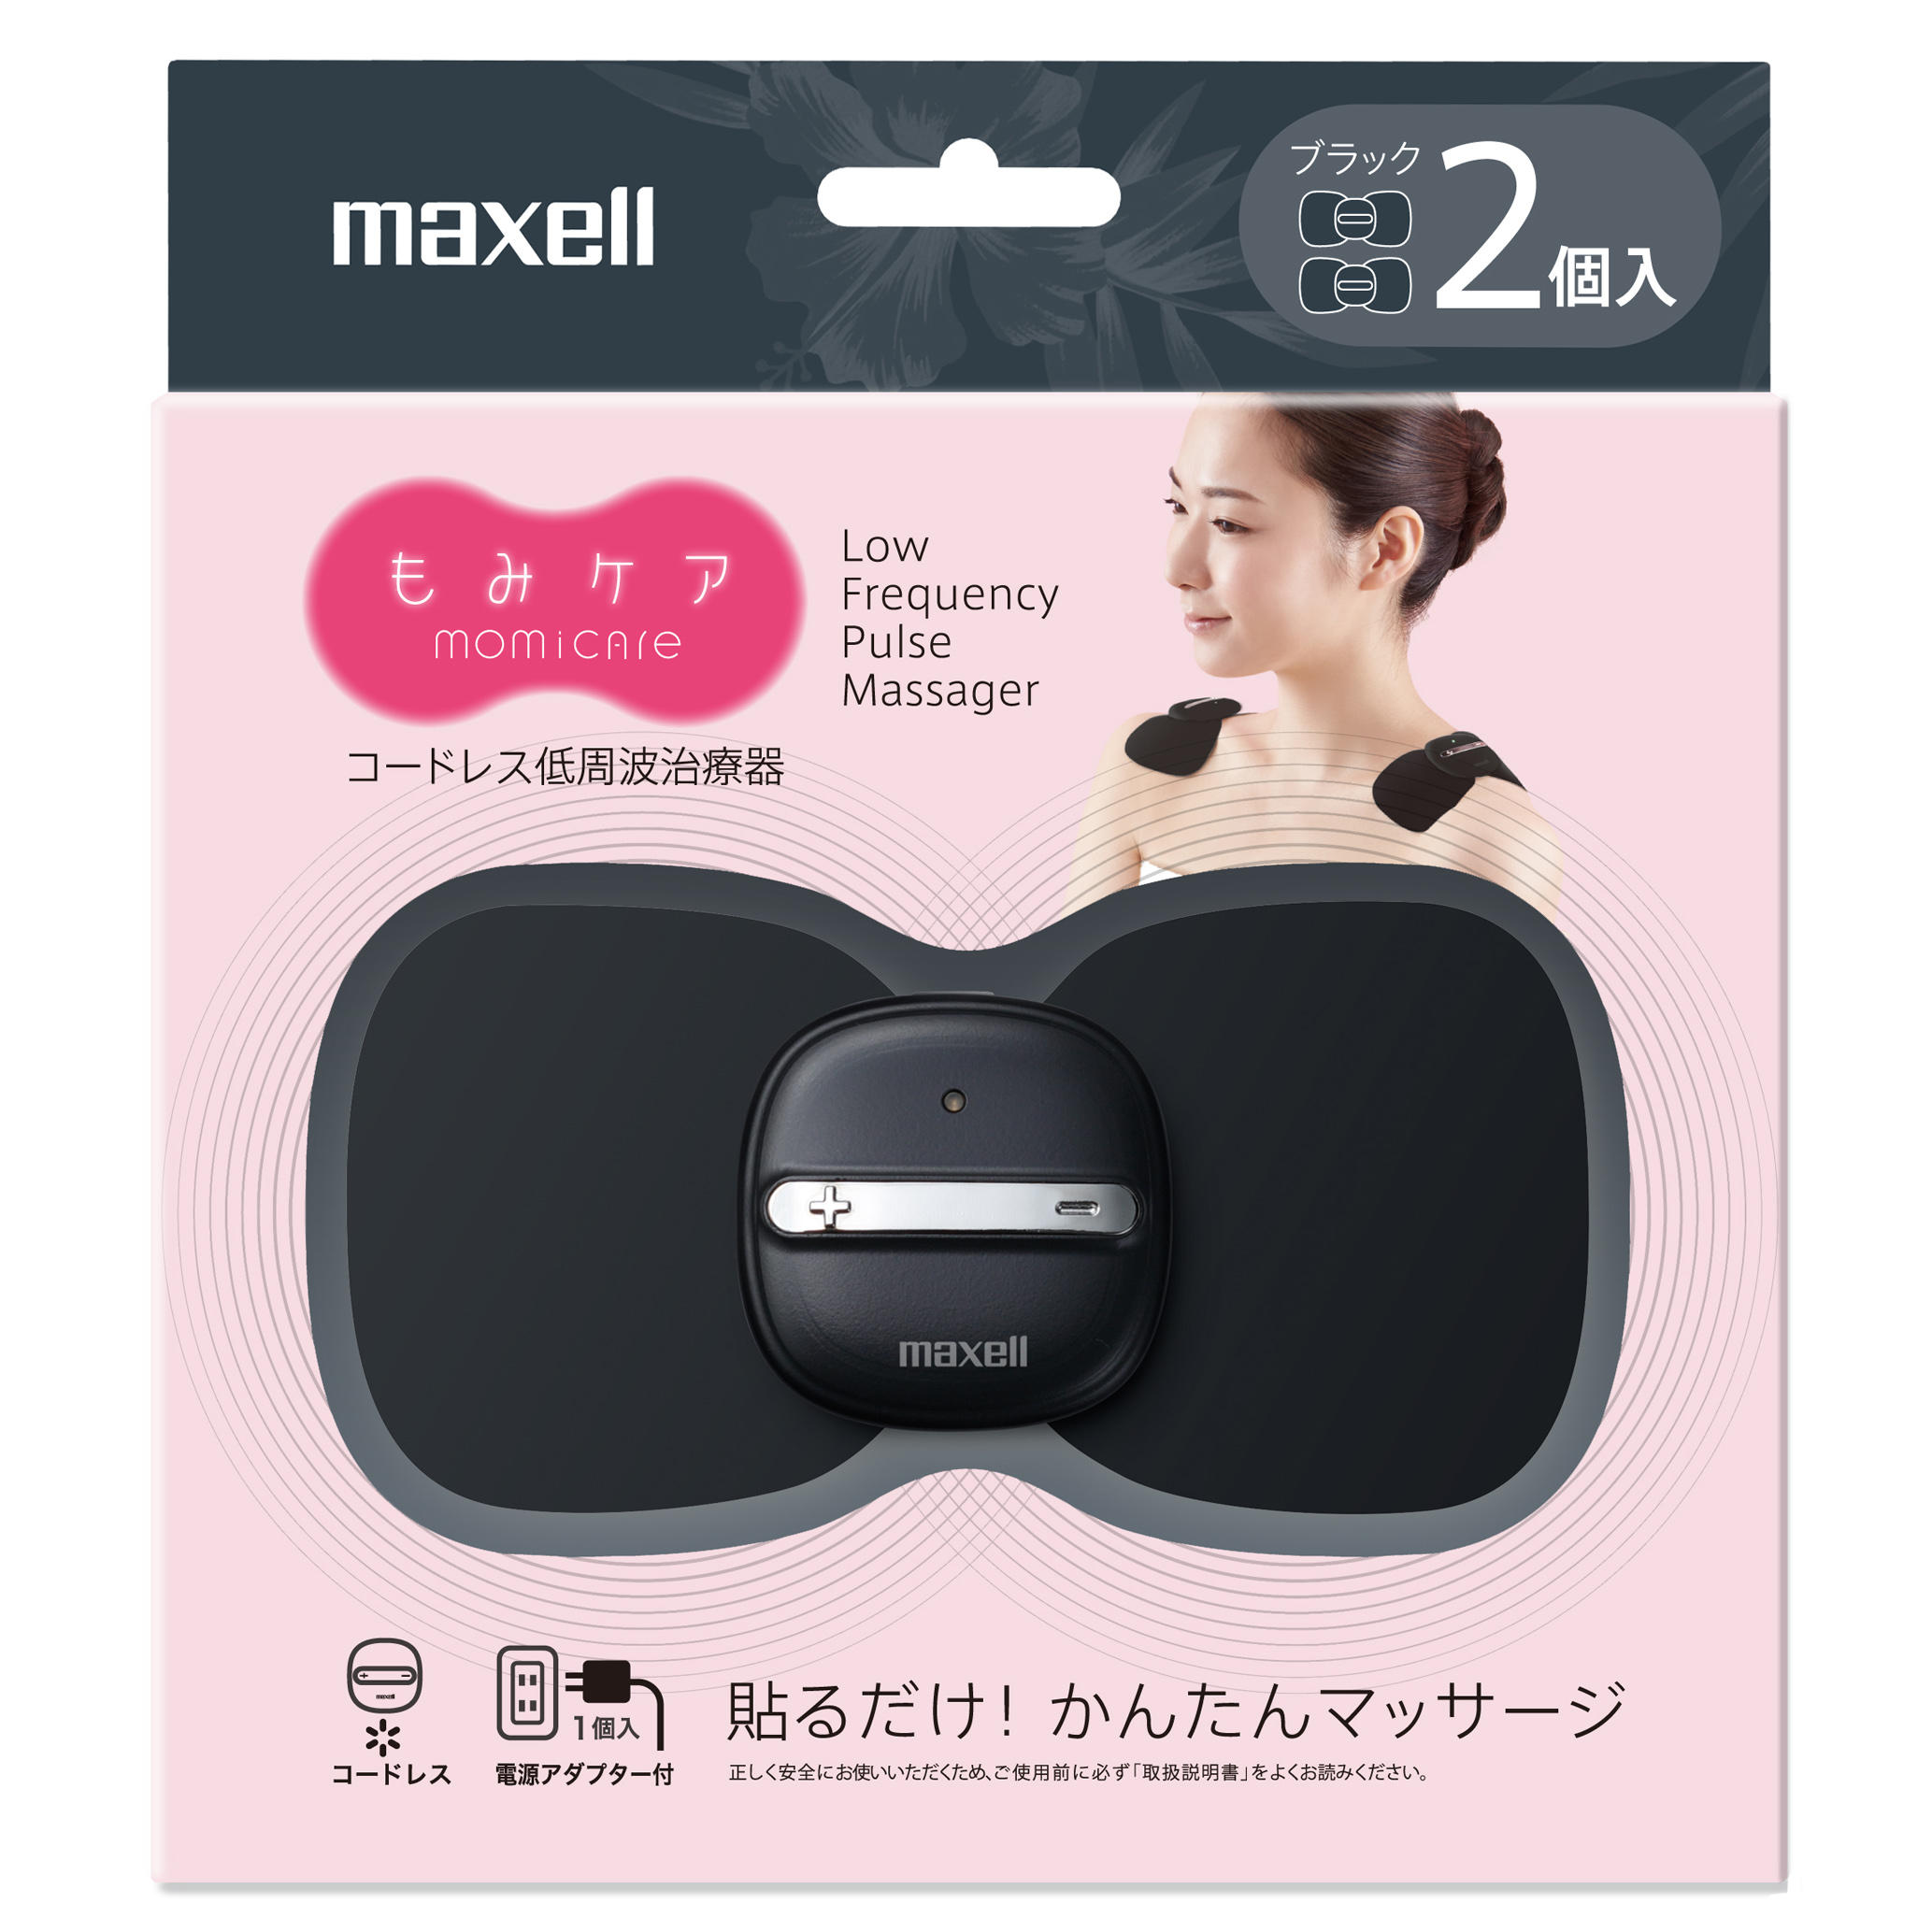 https://www.maxell.jp/en/consumer/assets/img/MXTS_MR200B2P_01_pkg.jpg